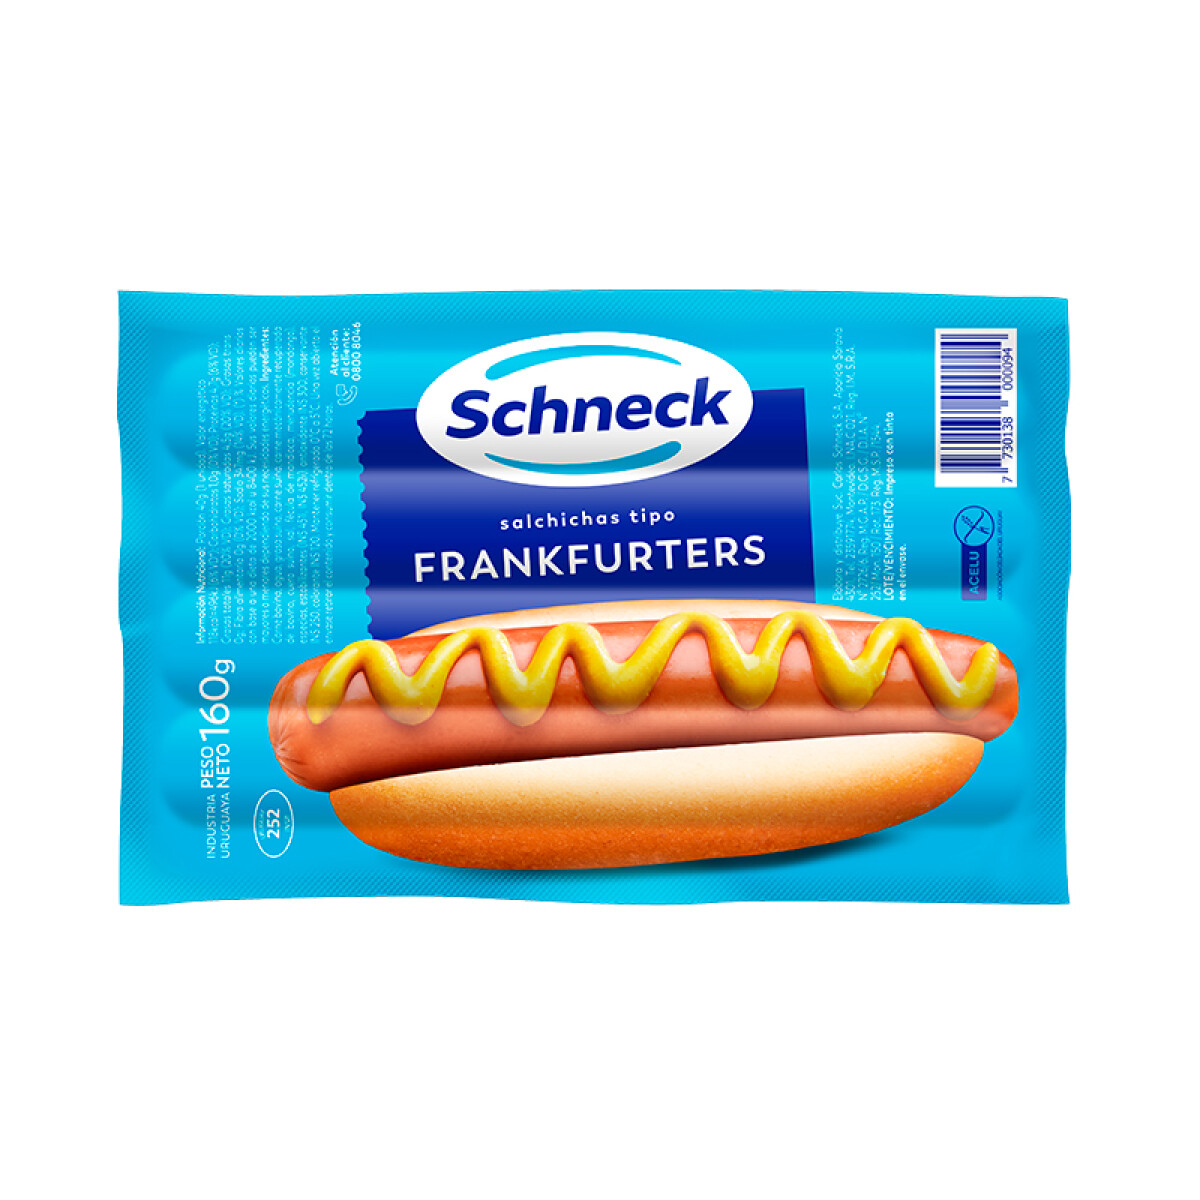 Frankfruters Schneck Cortos - x 8 unidades 